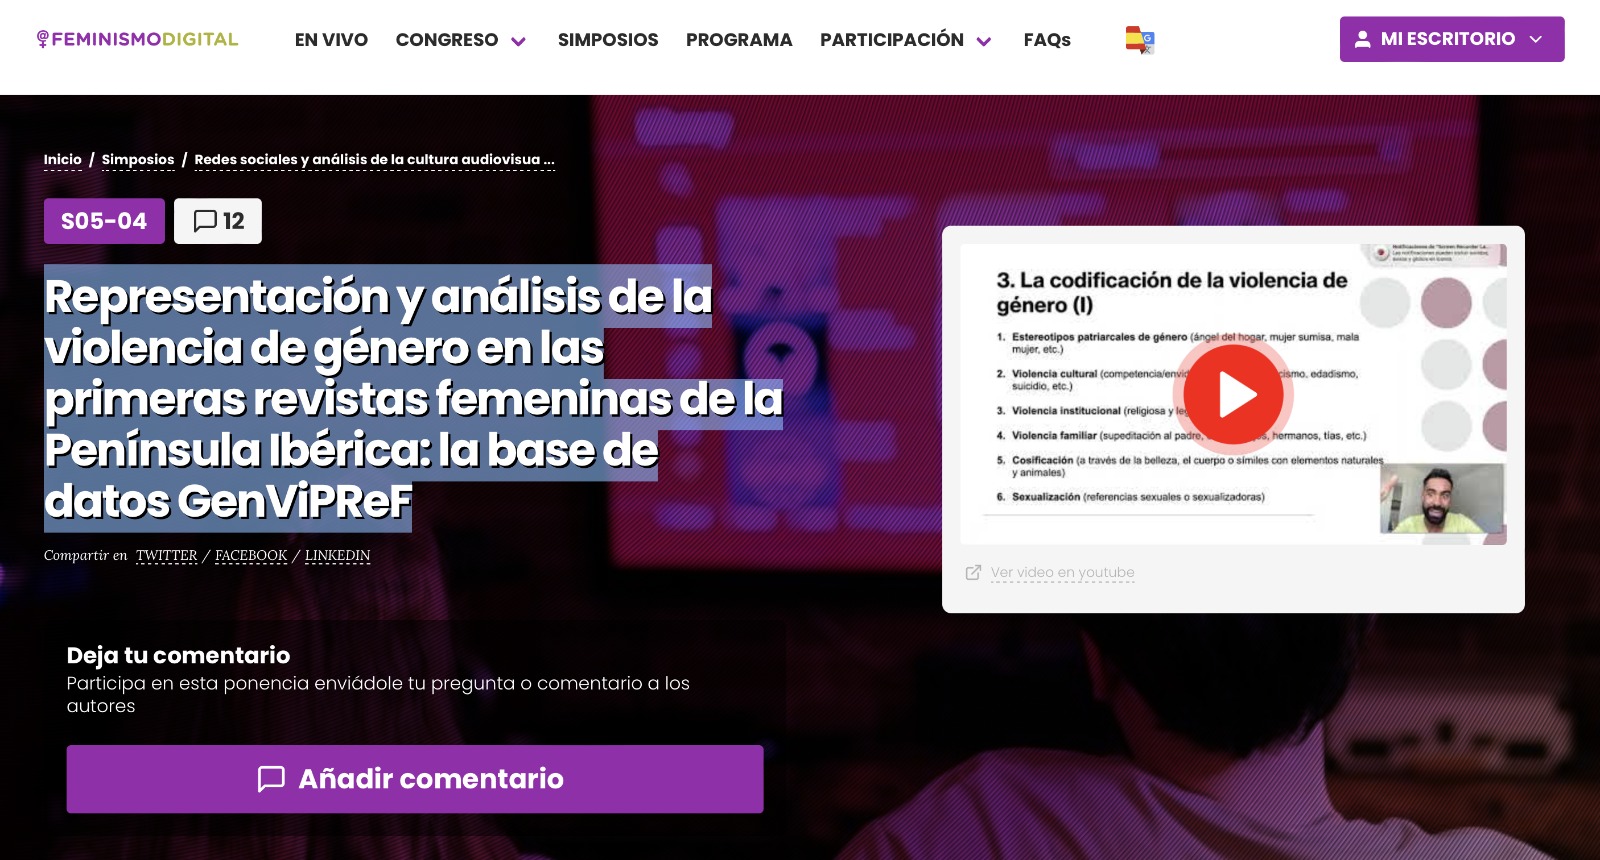 Representación y análisis de la violencia de género en las primeras revistas femeninas de la Península Ibérica: la base de datos GenViPReF